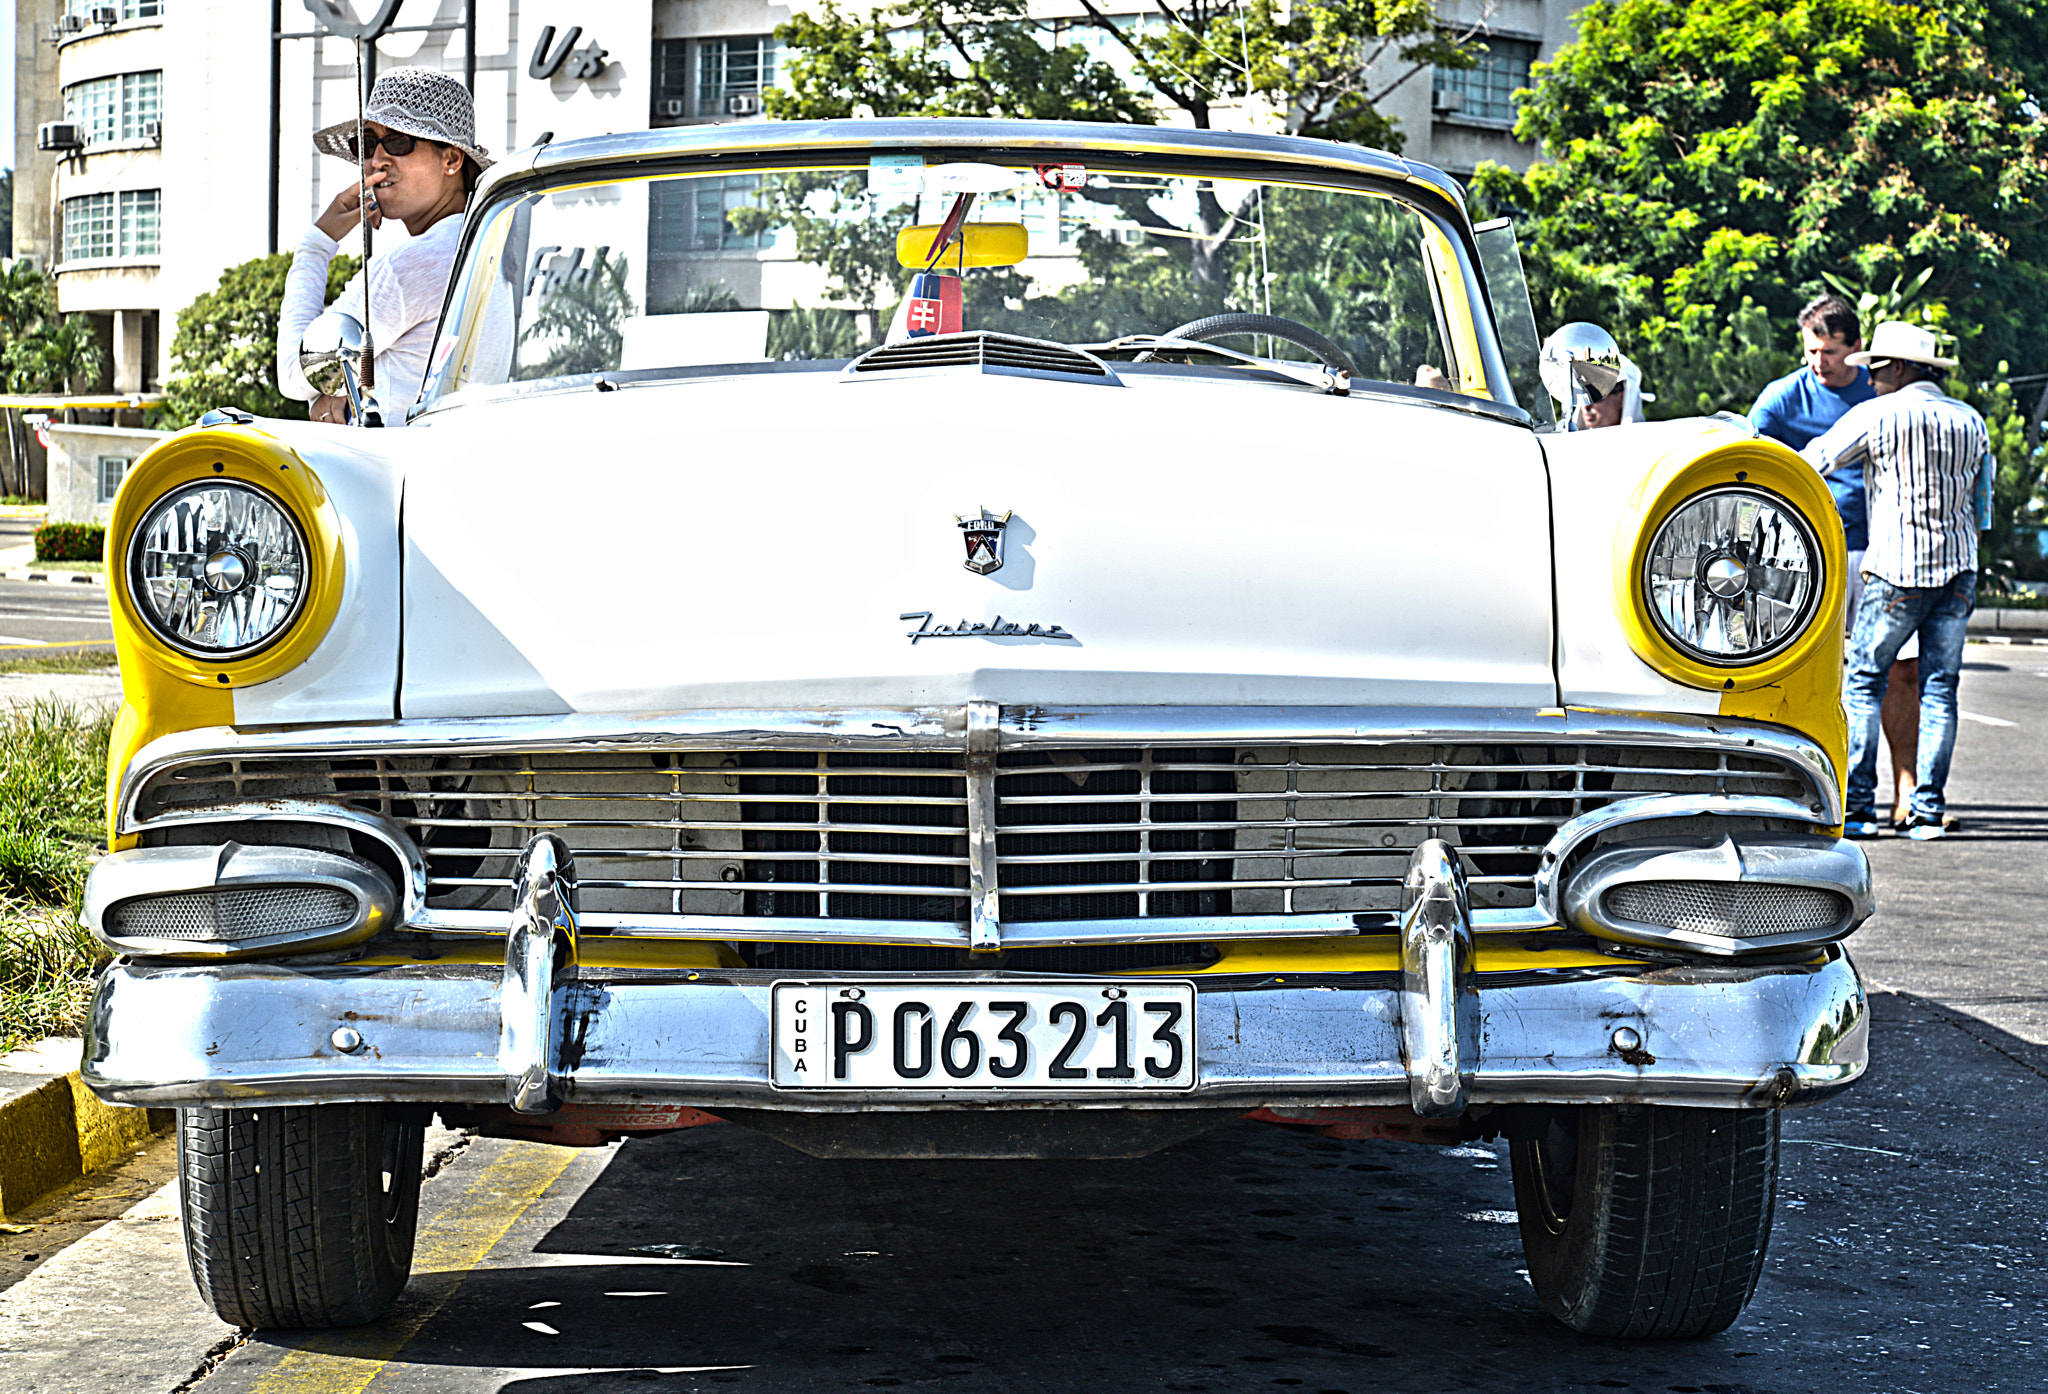 AF Zoom-Nikkor 35-105mm f/3.5-4.5D sample photo. Havana auto photography